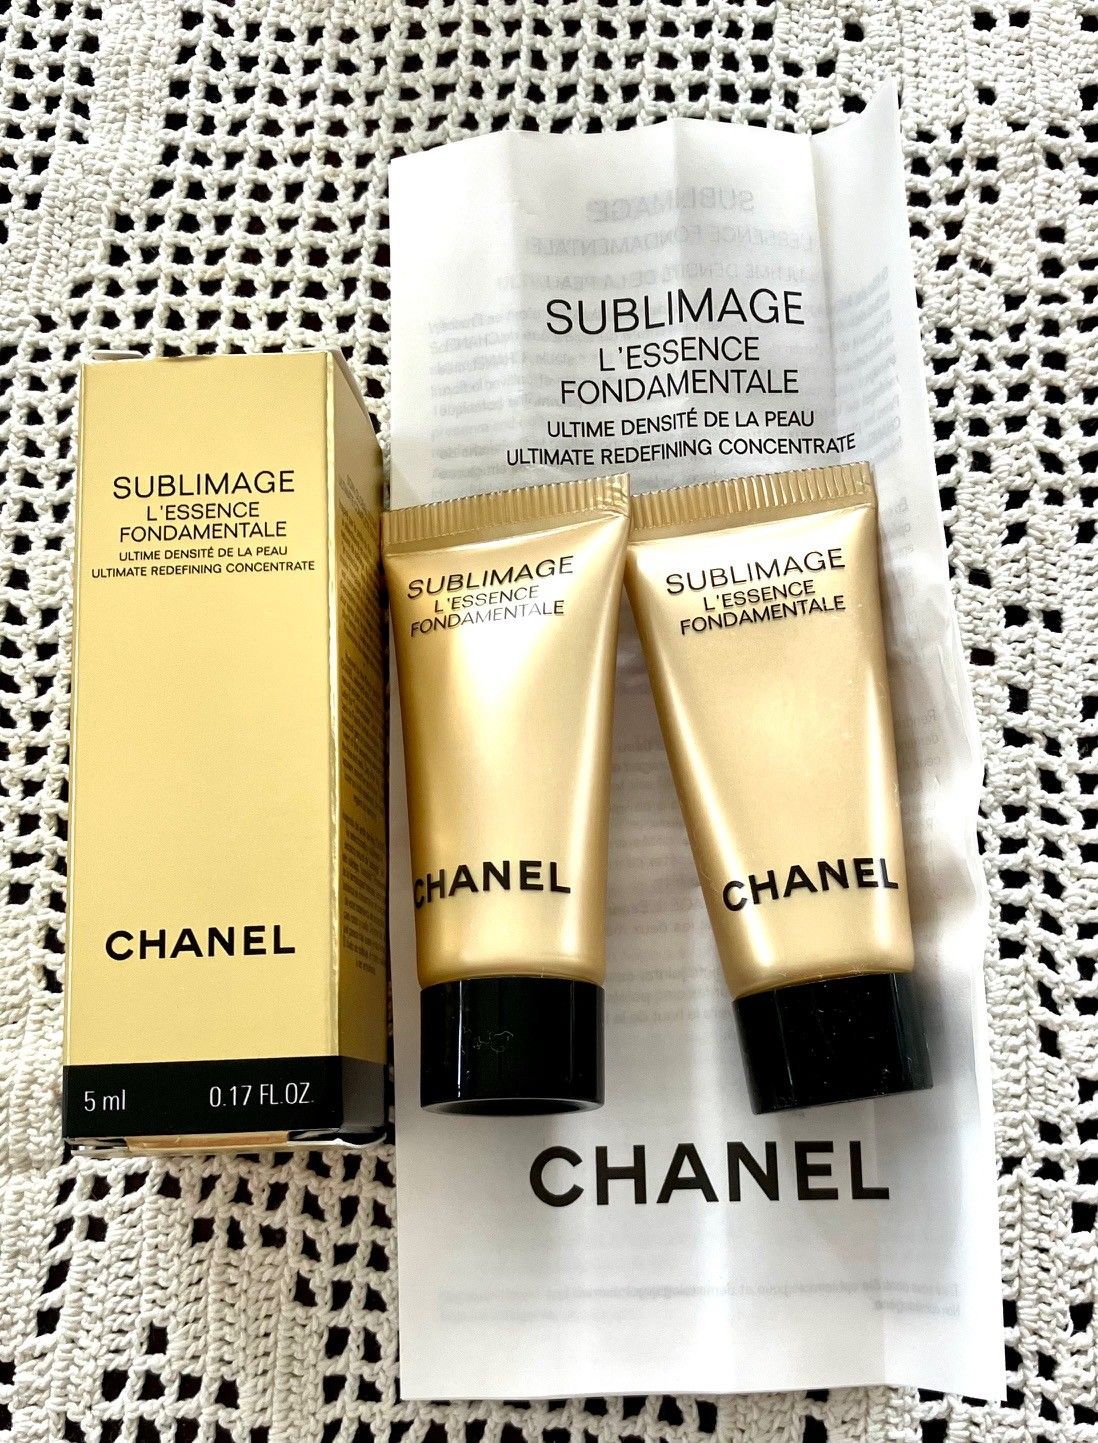 Review: Chanel Sublimage L'Essence Fondamentale - My Women Stuff